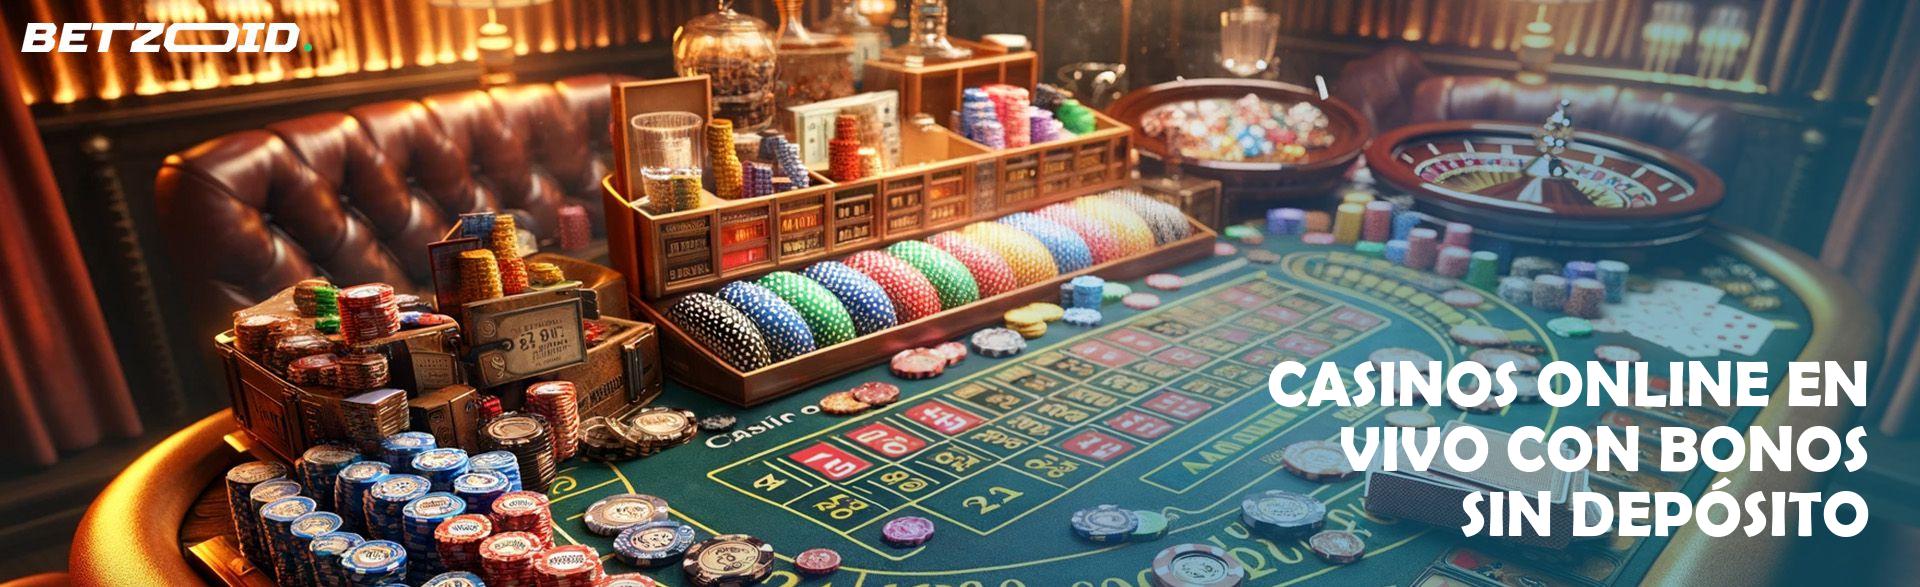 Casinos Online En Vivo con Bonos sin Depósito.